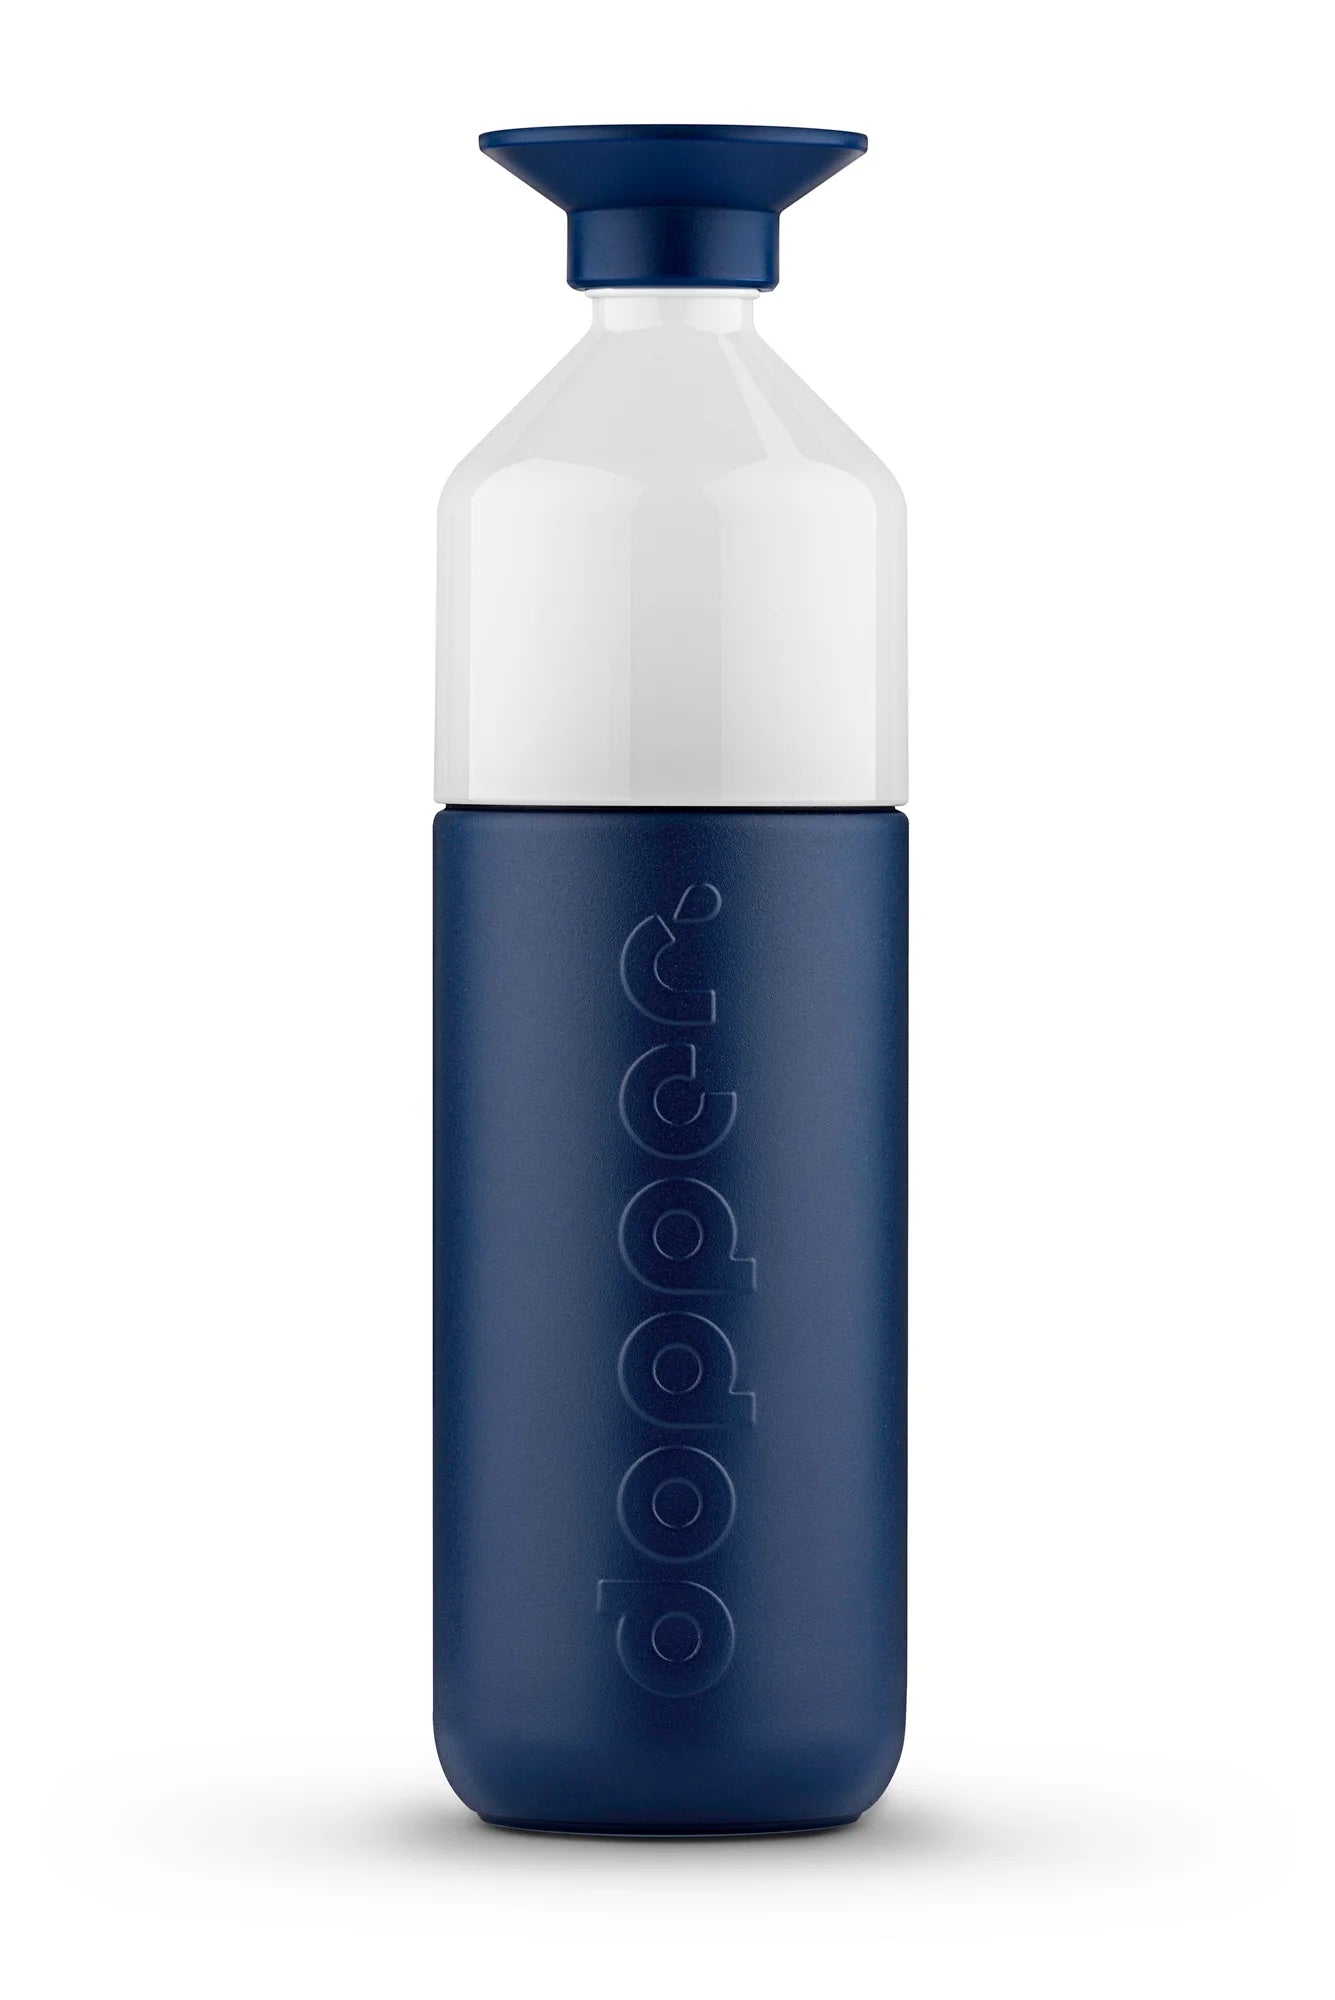 Dopper Insulated Breaker Blue butelka termiczna 1000ml